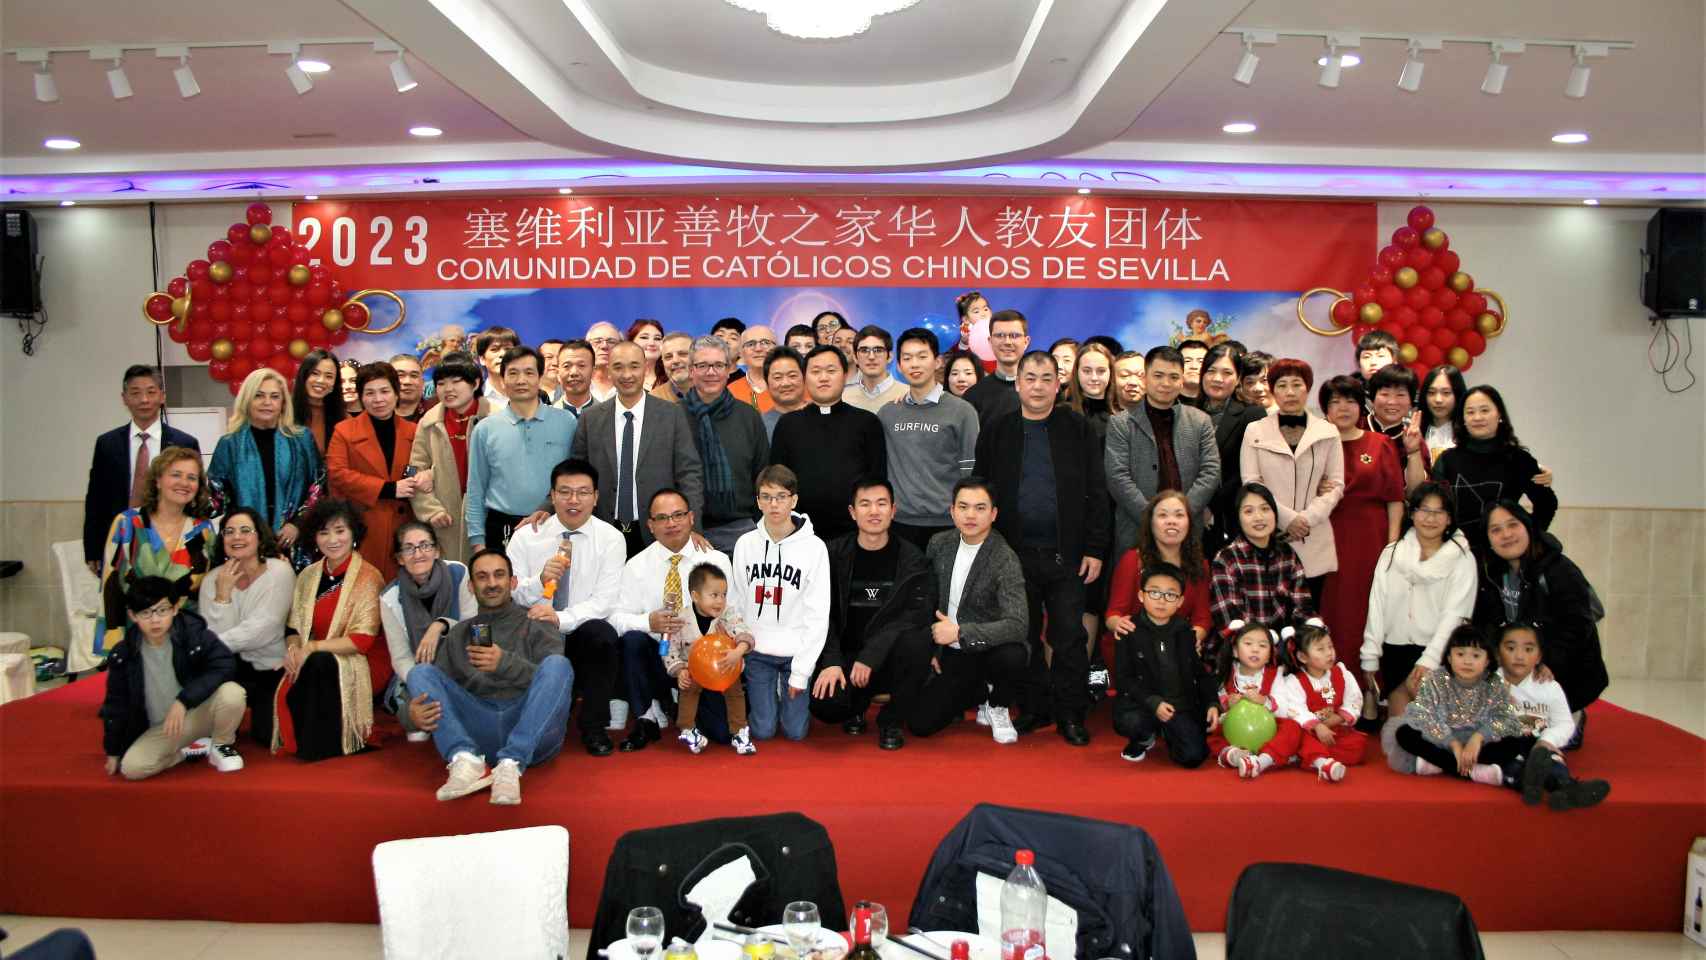 Los participantes en la fiesta del Año Nuevo Lunar de 2023 organizada por la comunidad de chinos católicos de Sevilla.